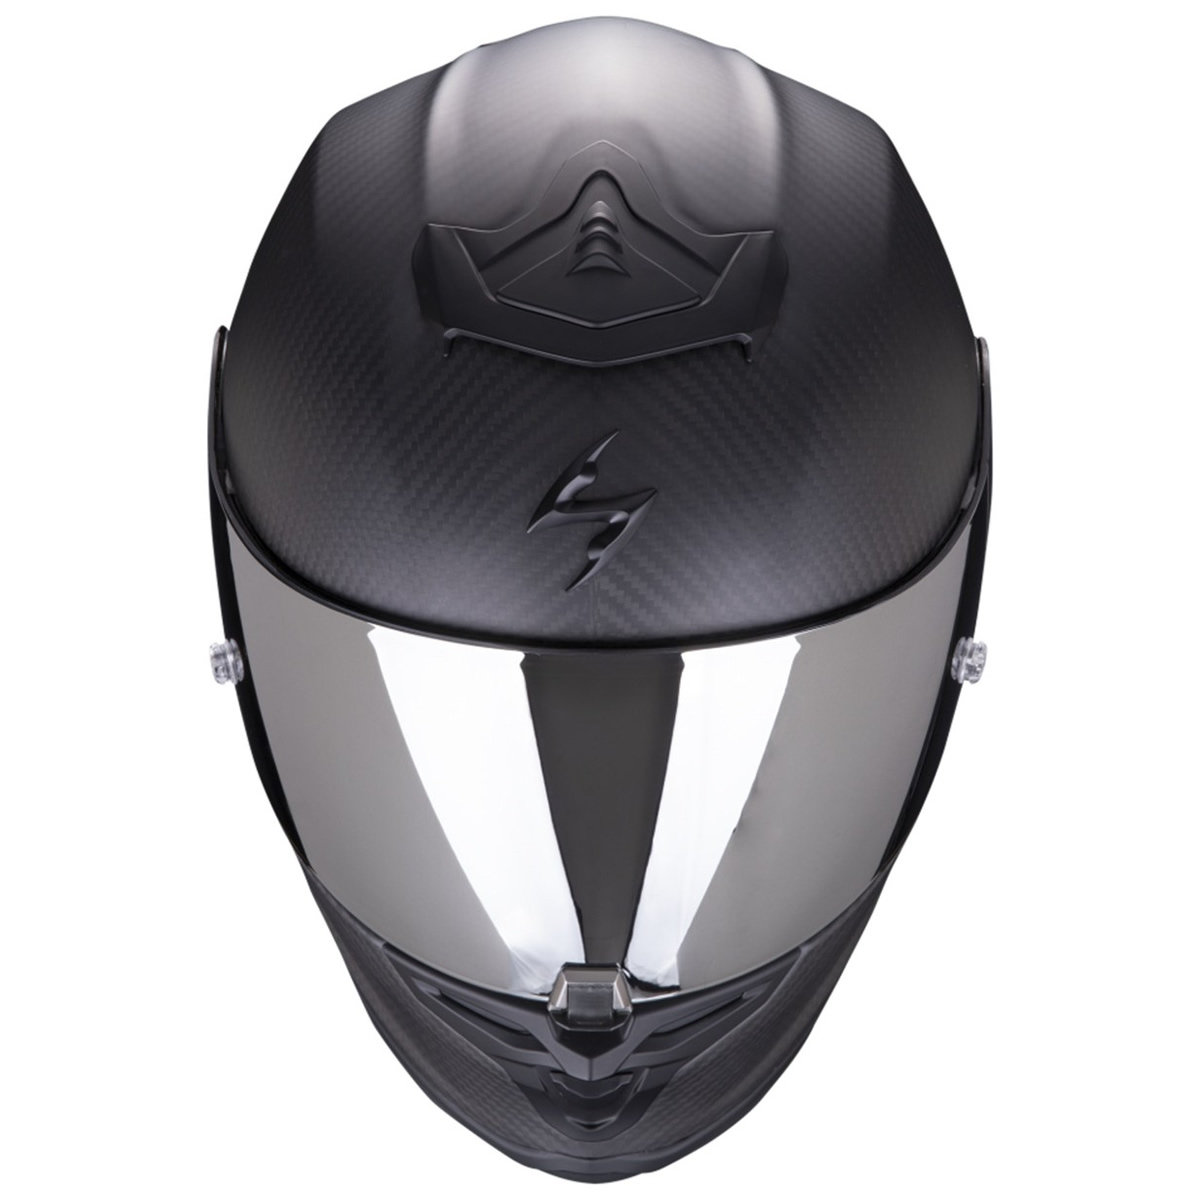 Scorpion Helm EXO-R1 EVO Carbon Air Solid, carbon matt